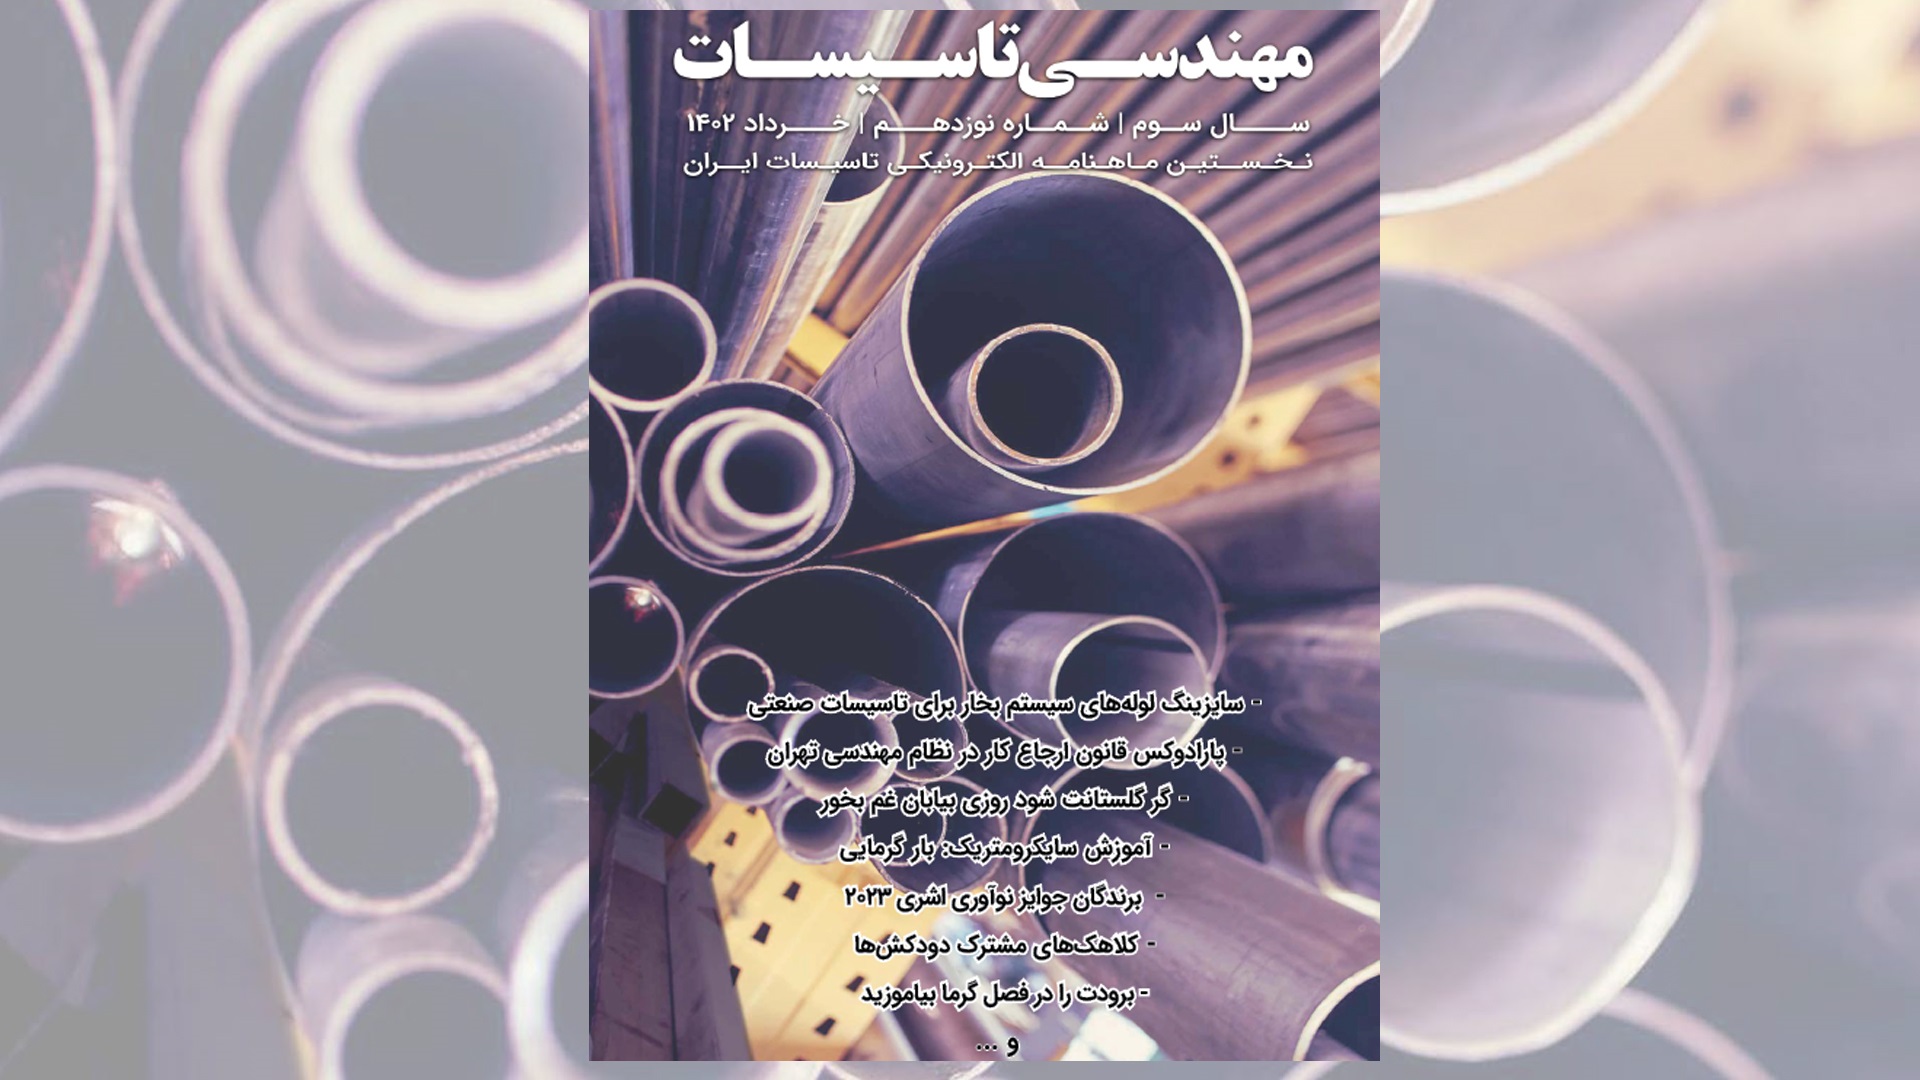 ماهنامه مهندسی تاسیسات شماره 19 منتشر شد